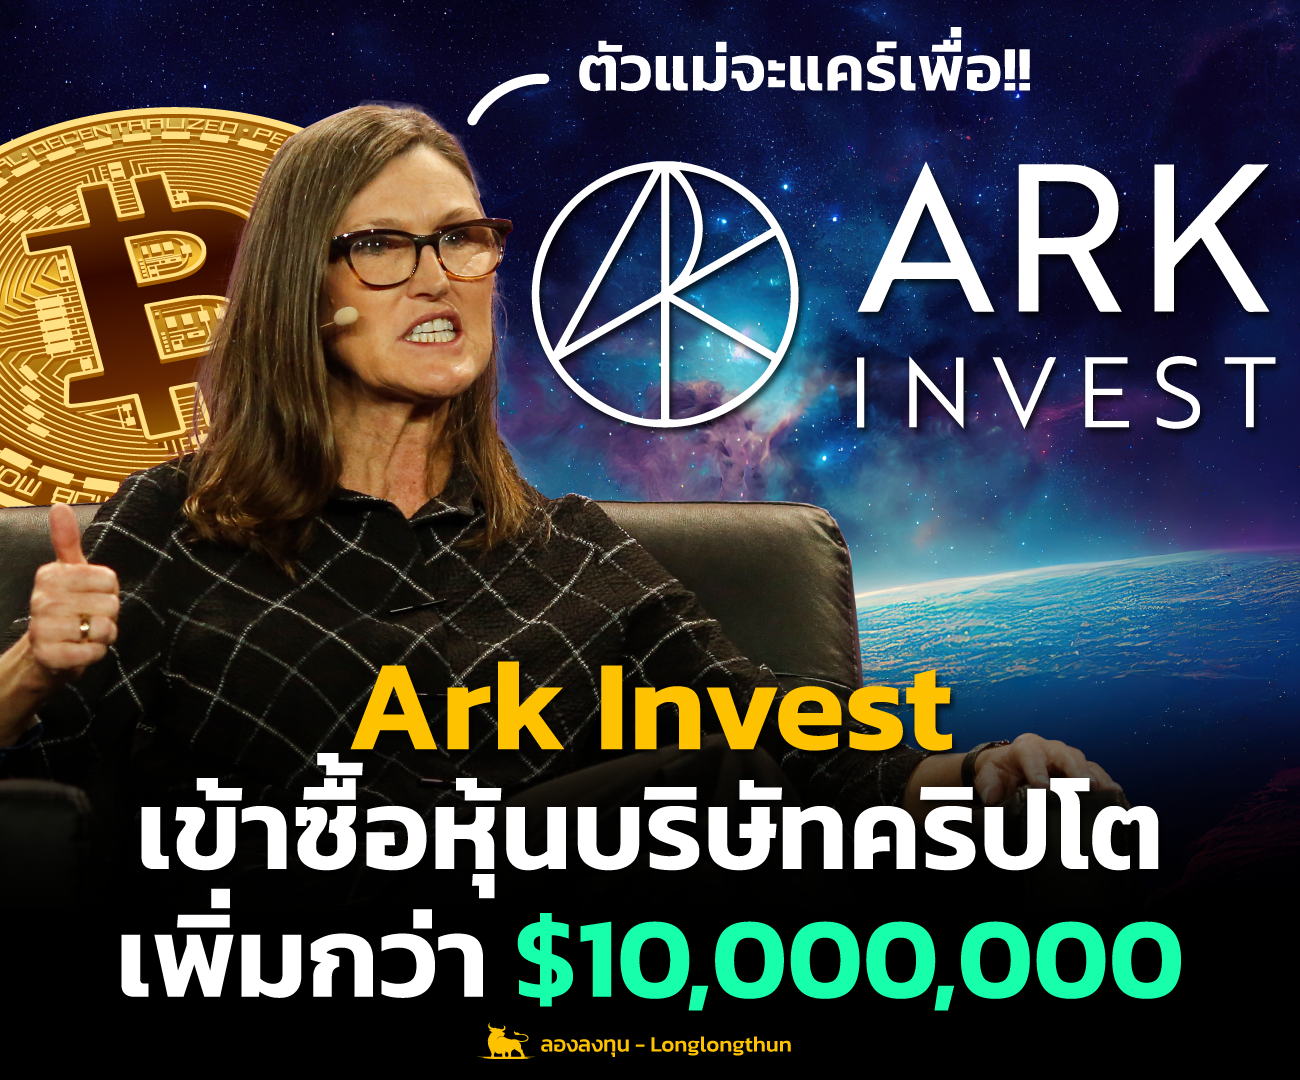 Ark Invest เข้าซื้อหุ้นบริษัทคริปโตกว่า 10 ล้านดอลลาร์ แม้ตลาดพันผวน